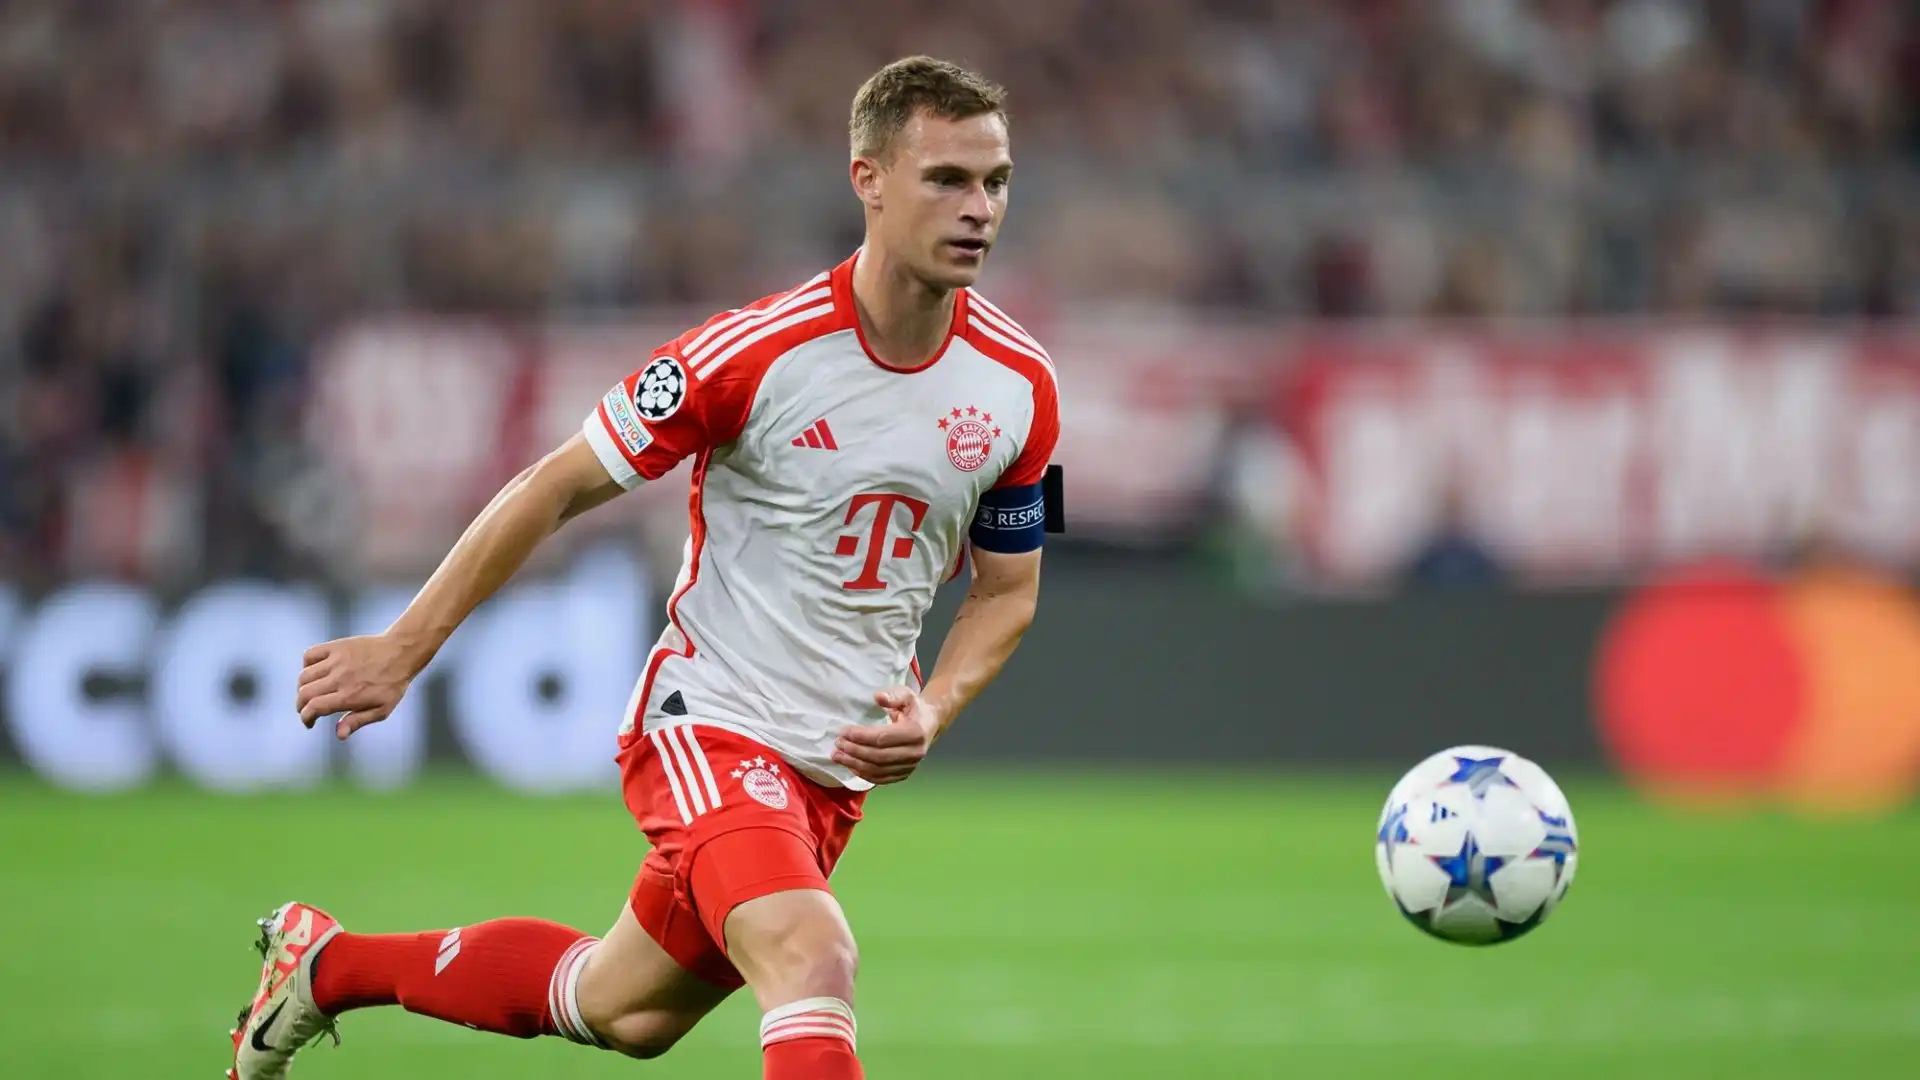 Le ultime prestazioni del Bayern Monaco hanno gettato ombre sul futuro del tedesco